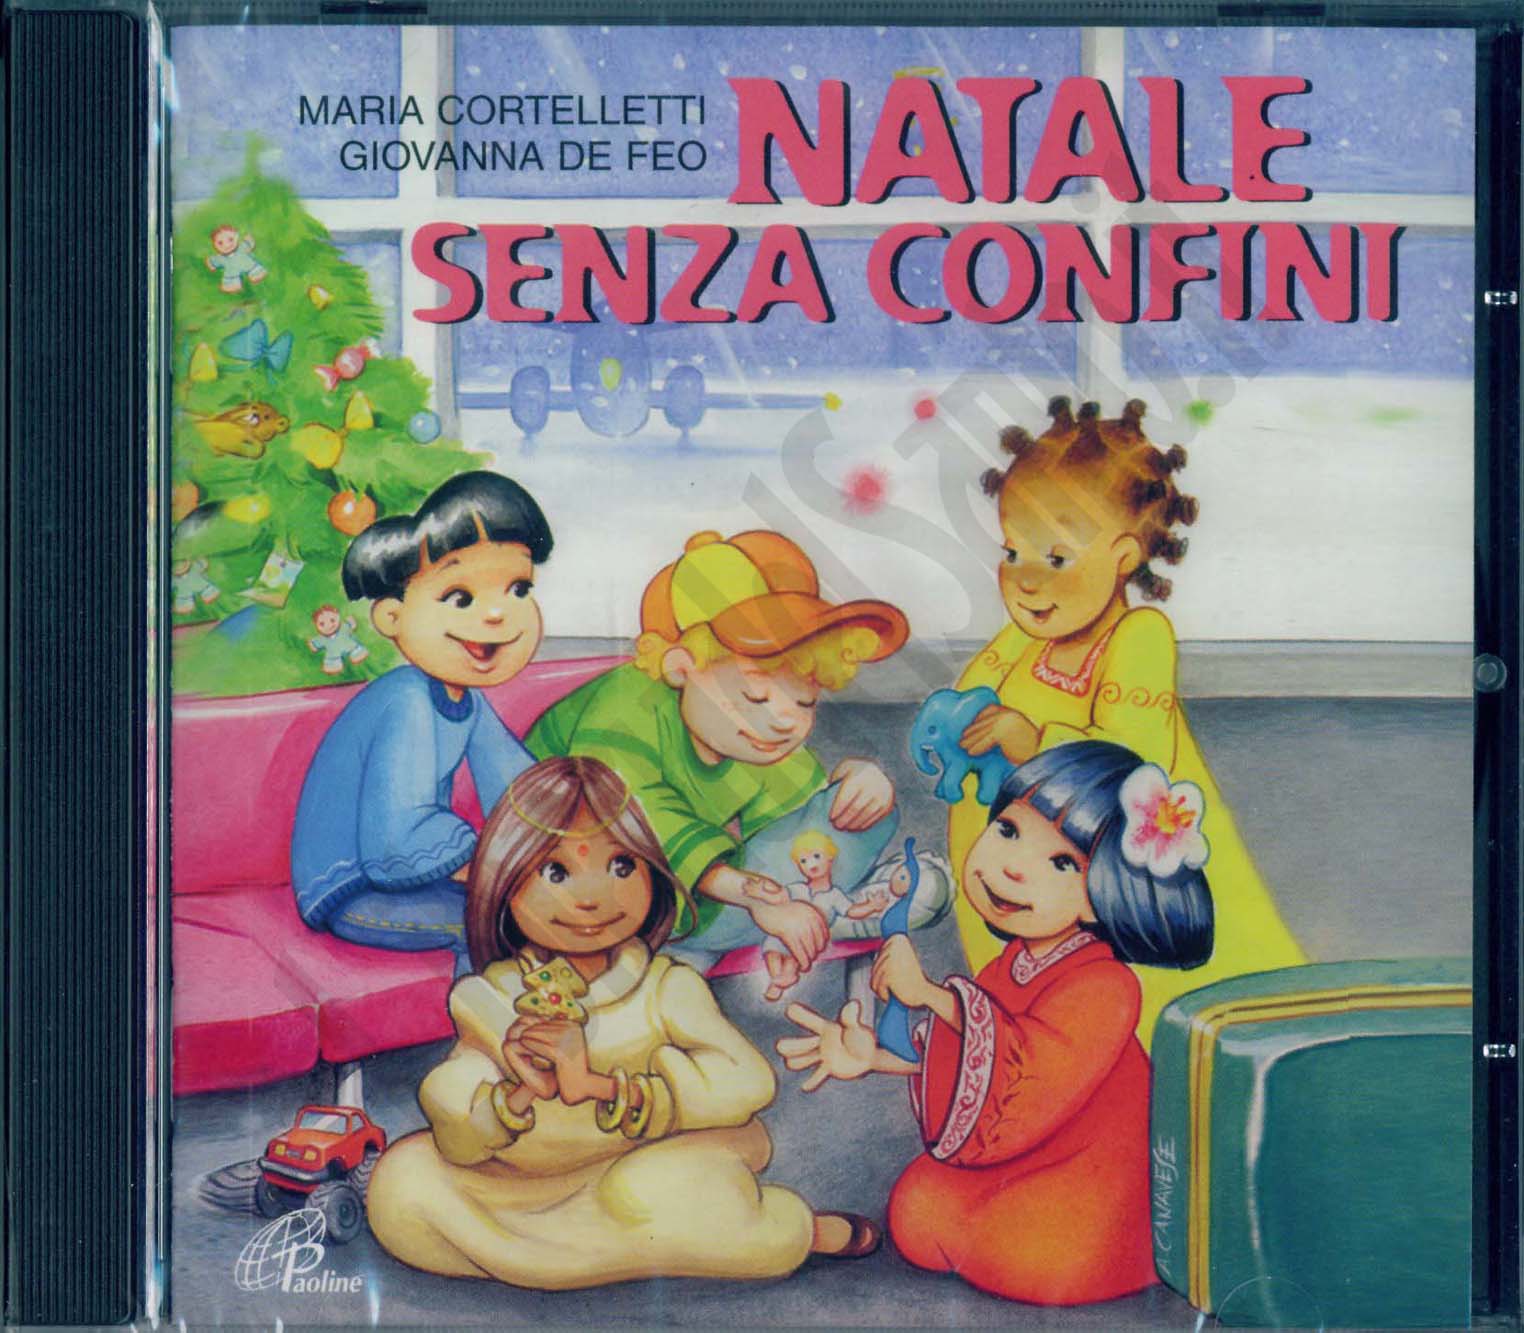 Recite Di Natale Edizioni Paoline.Natale Senza Confini Maria Cortelletti Giovanna De Feo Cd Musica Natalizia Libreriadelsanto It